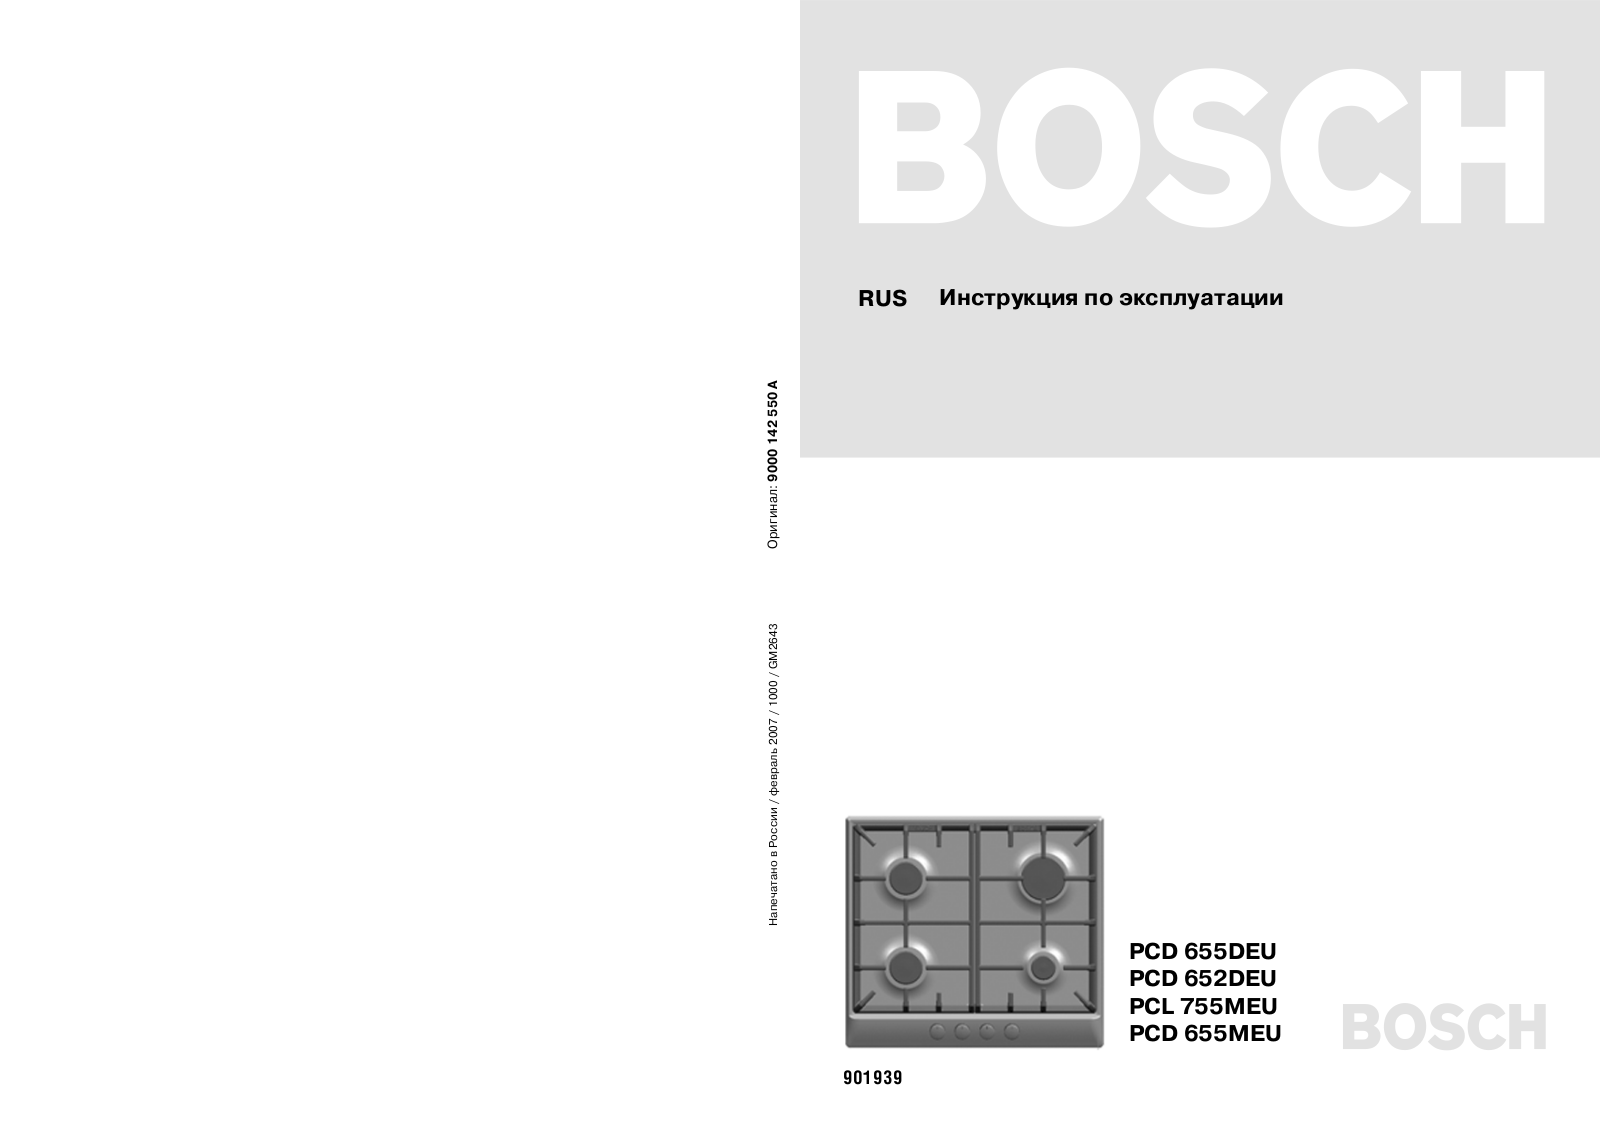 Bosch PCL 755MEU User Manual